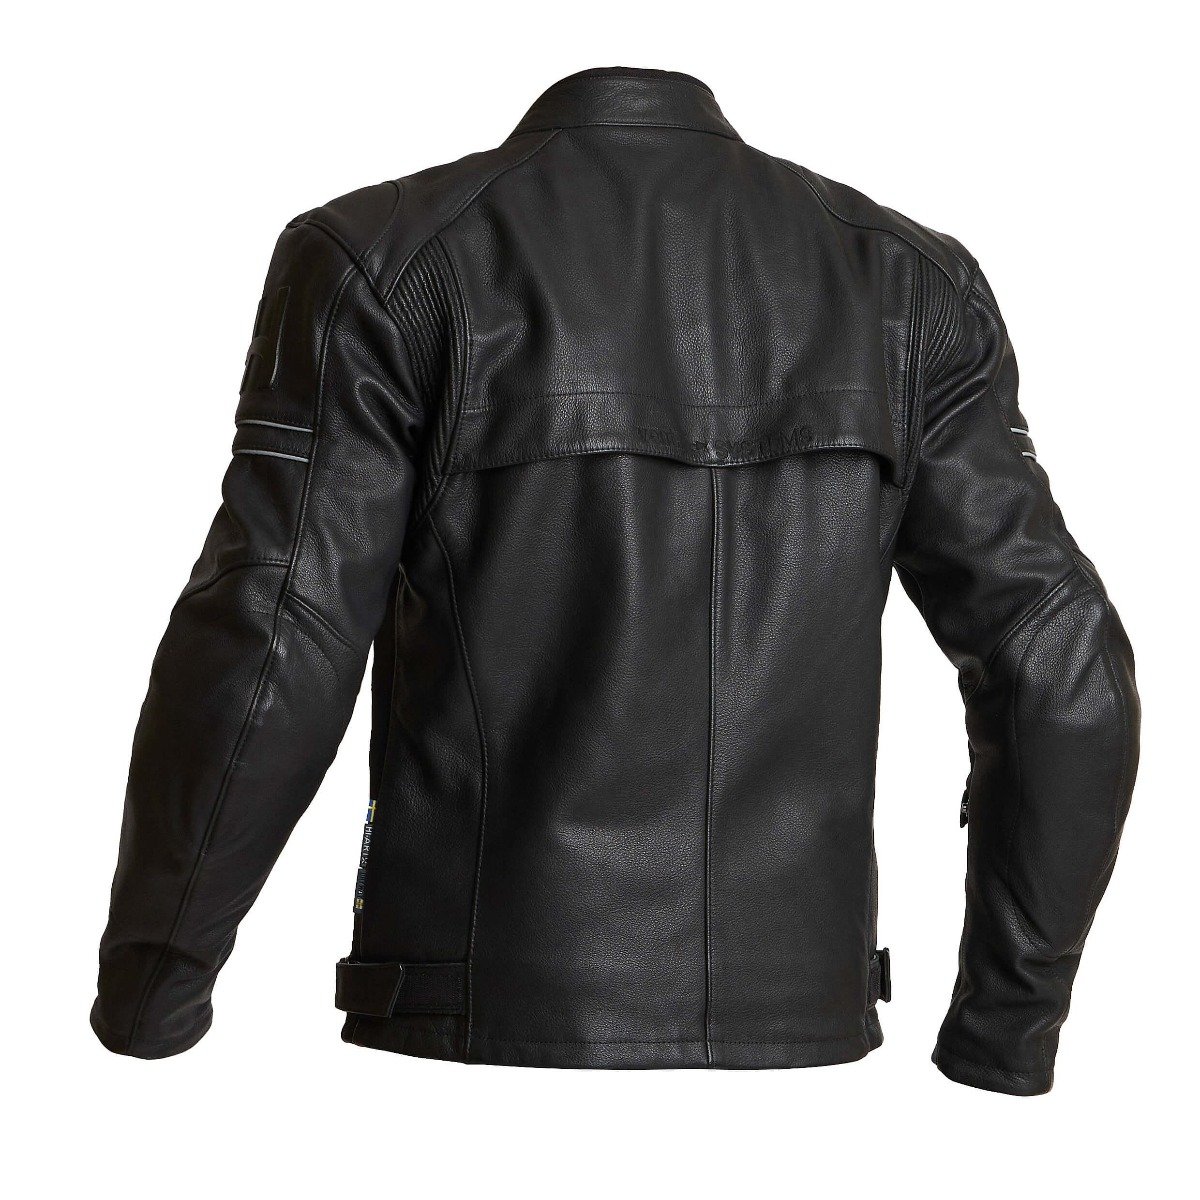 Image of Halvarssons Idre Jacket Black Size 56 EN